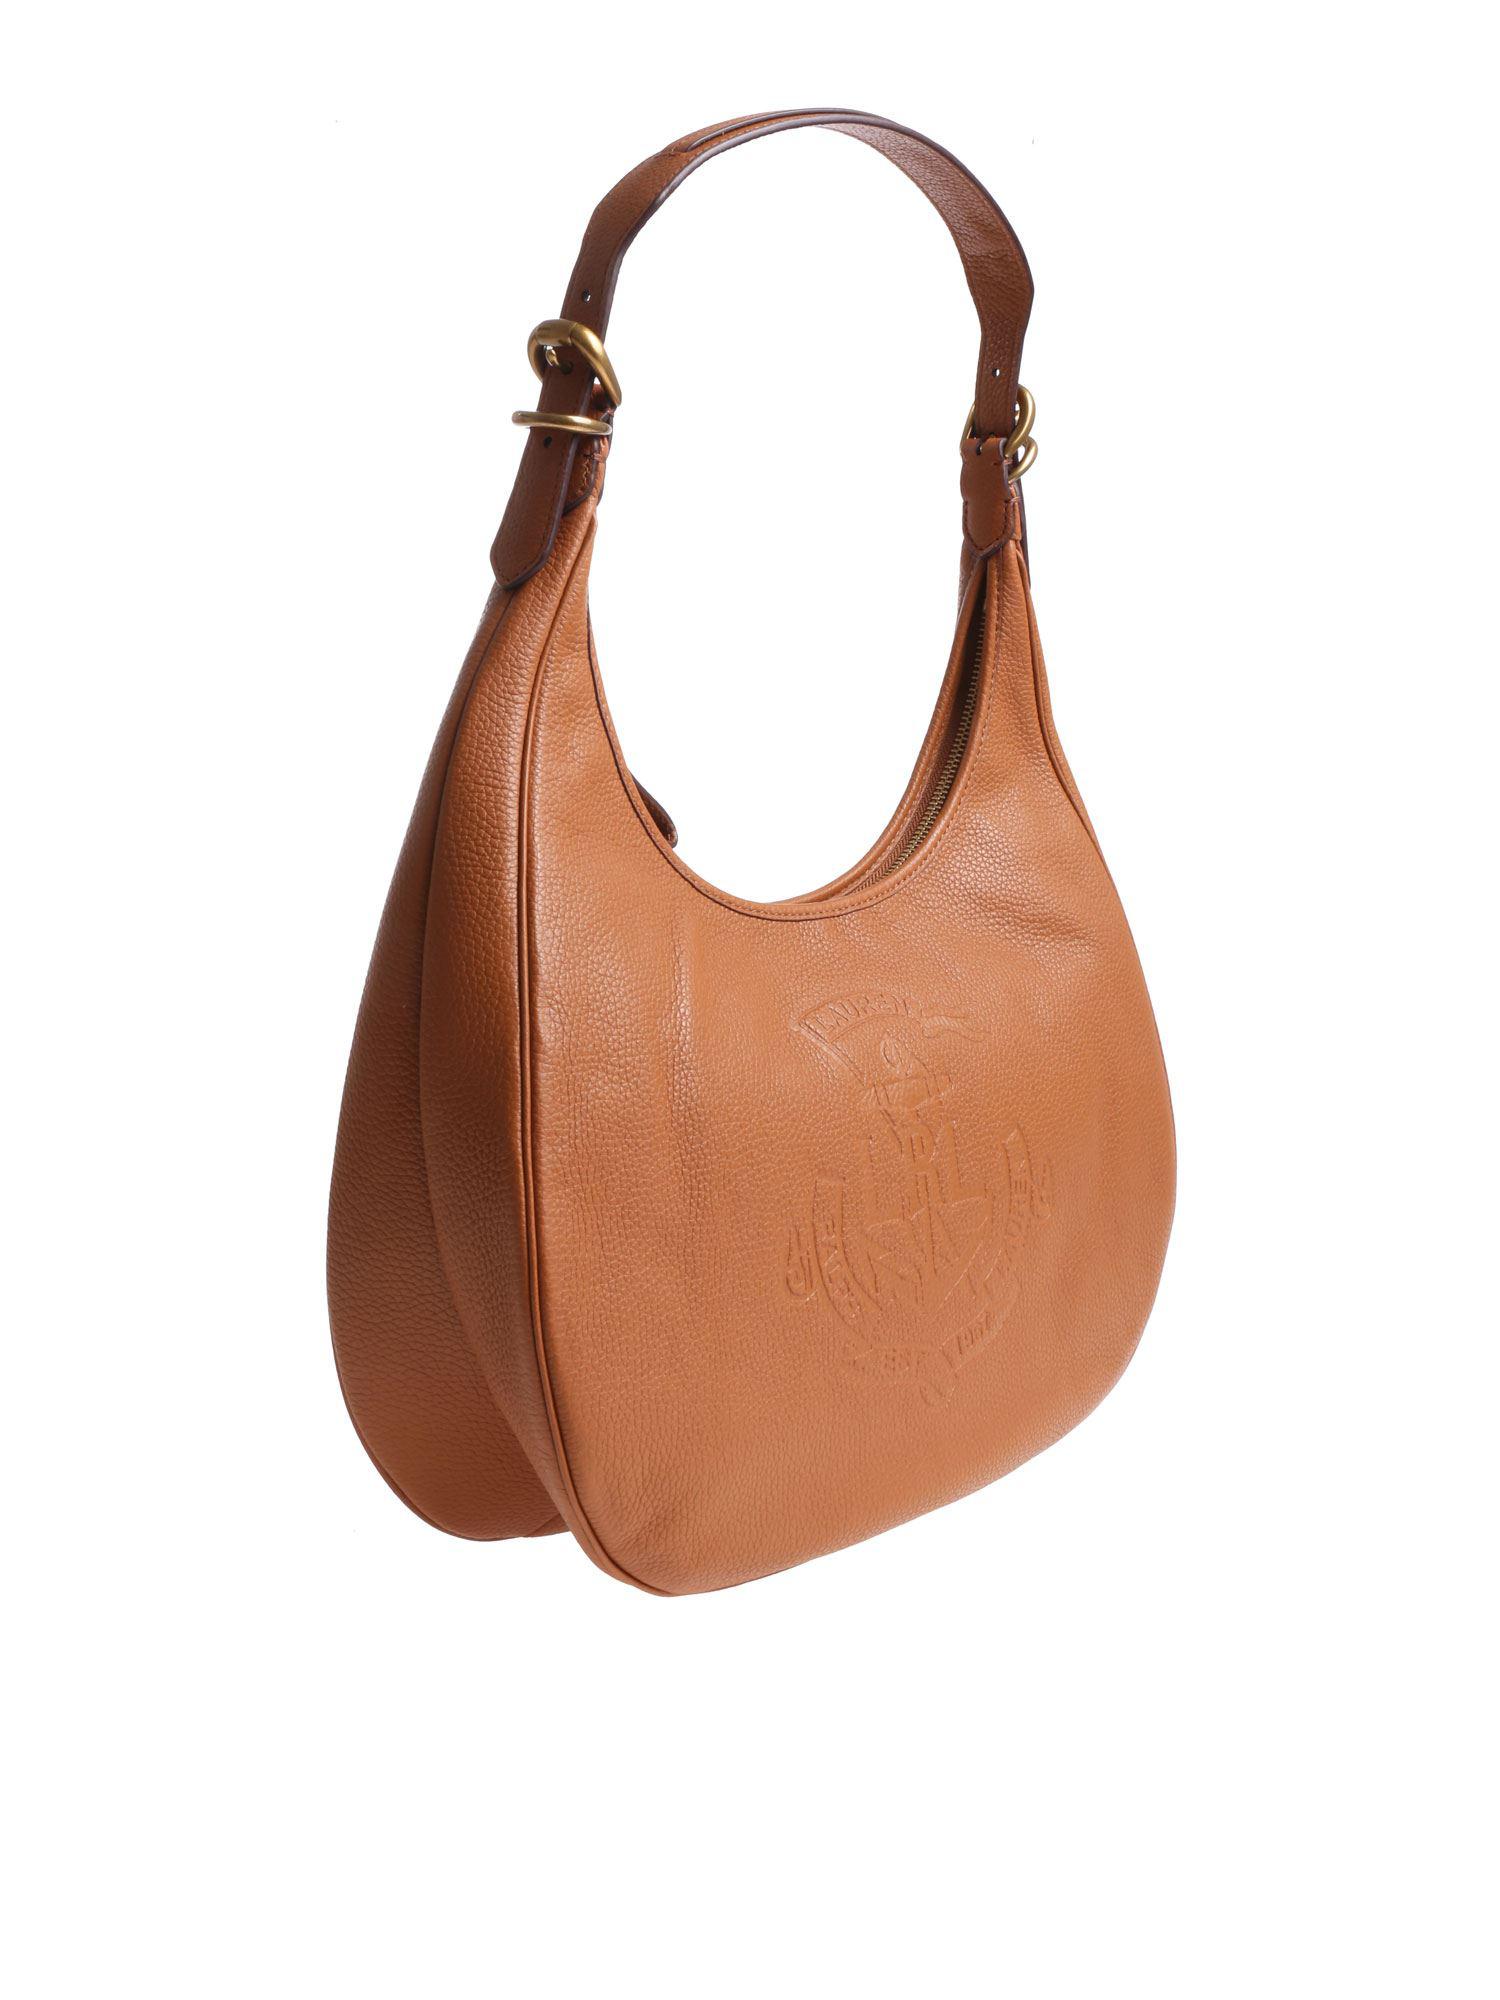 Lauren by Ralph Lauren Leather Huntley Tan-color Bag in Brown - Lyst